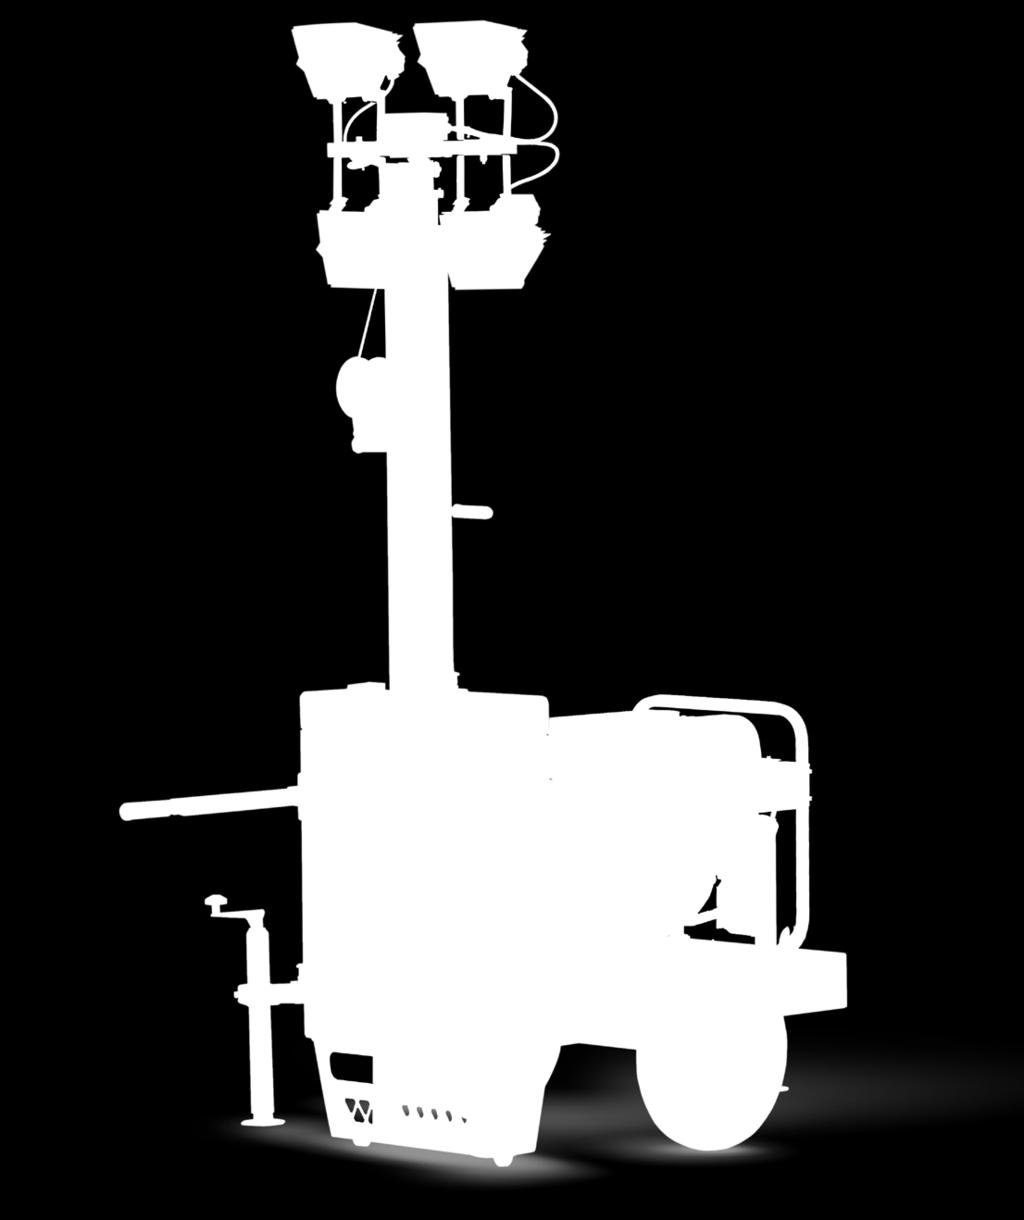 L arganello manuale permette un facile sollevamento del palo telescopico in totale sicurezza e le due maniglie retrattili aiutano il cliente finale negli spostamenti manuali.